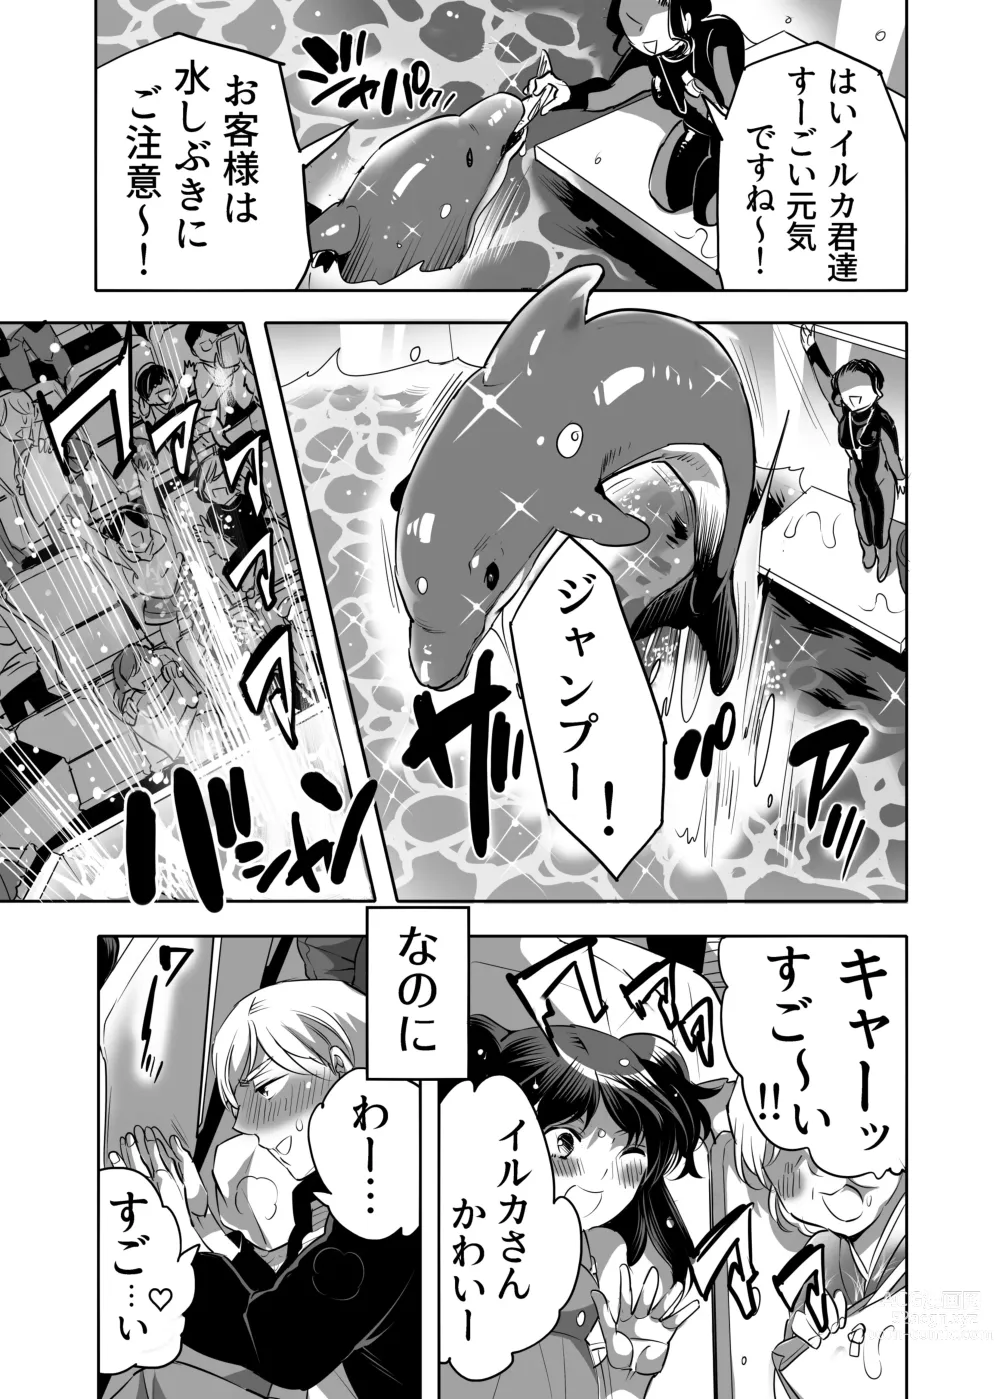 Page 7 of manga Abuso OK Prisionero Niño